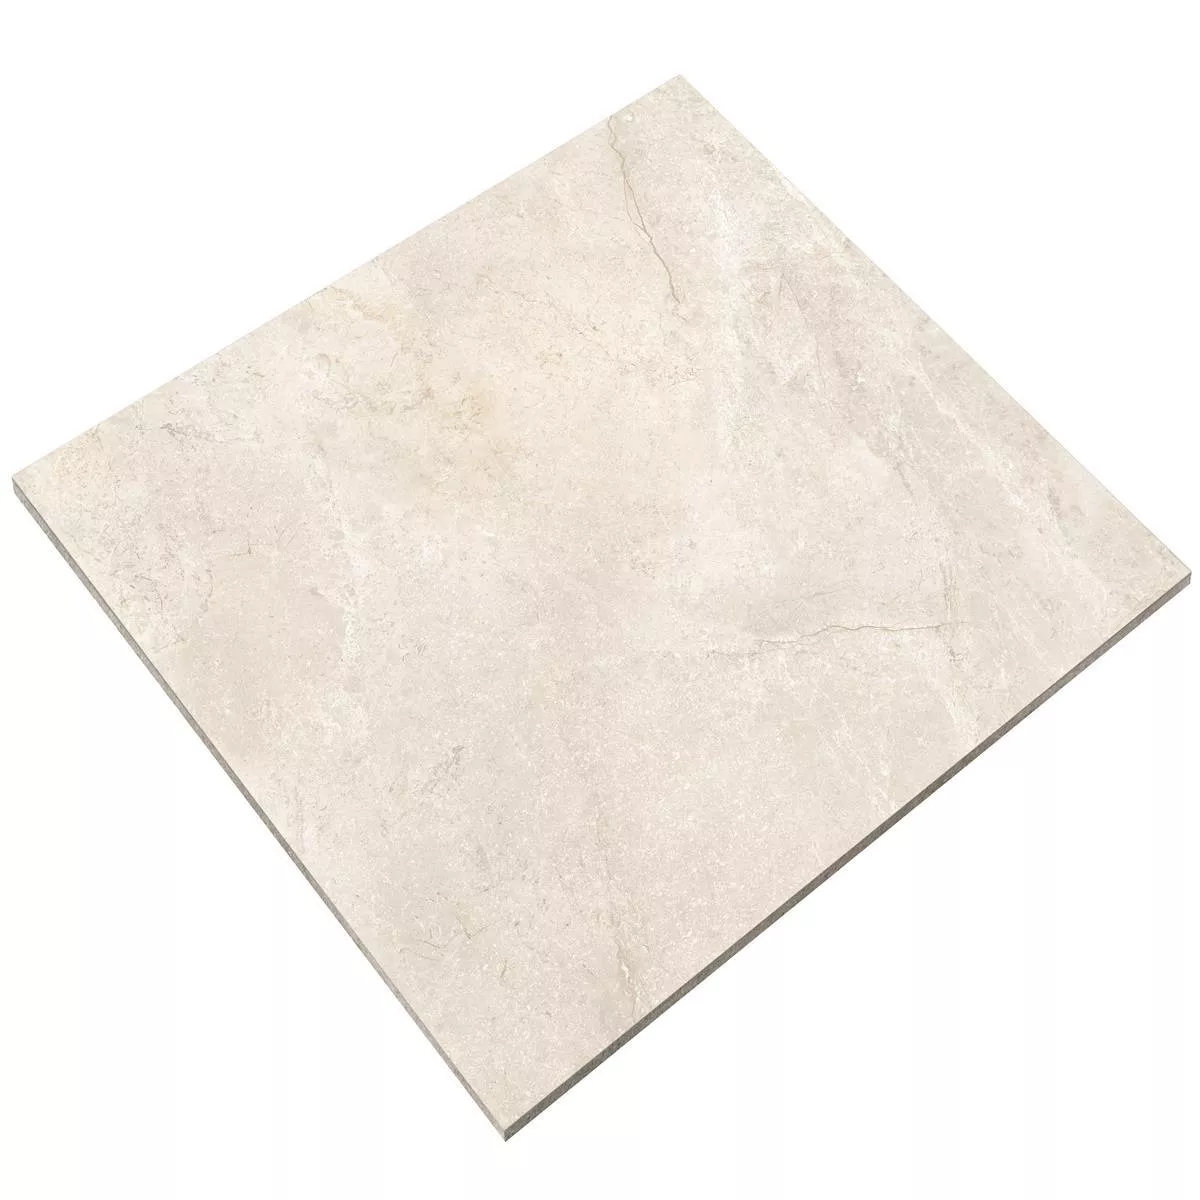 Πρότυπο από Πλακάκια Δαπέδου Pangea Μαρμάρινη Όψη Αμεμπτος Cream 120x120cm